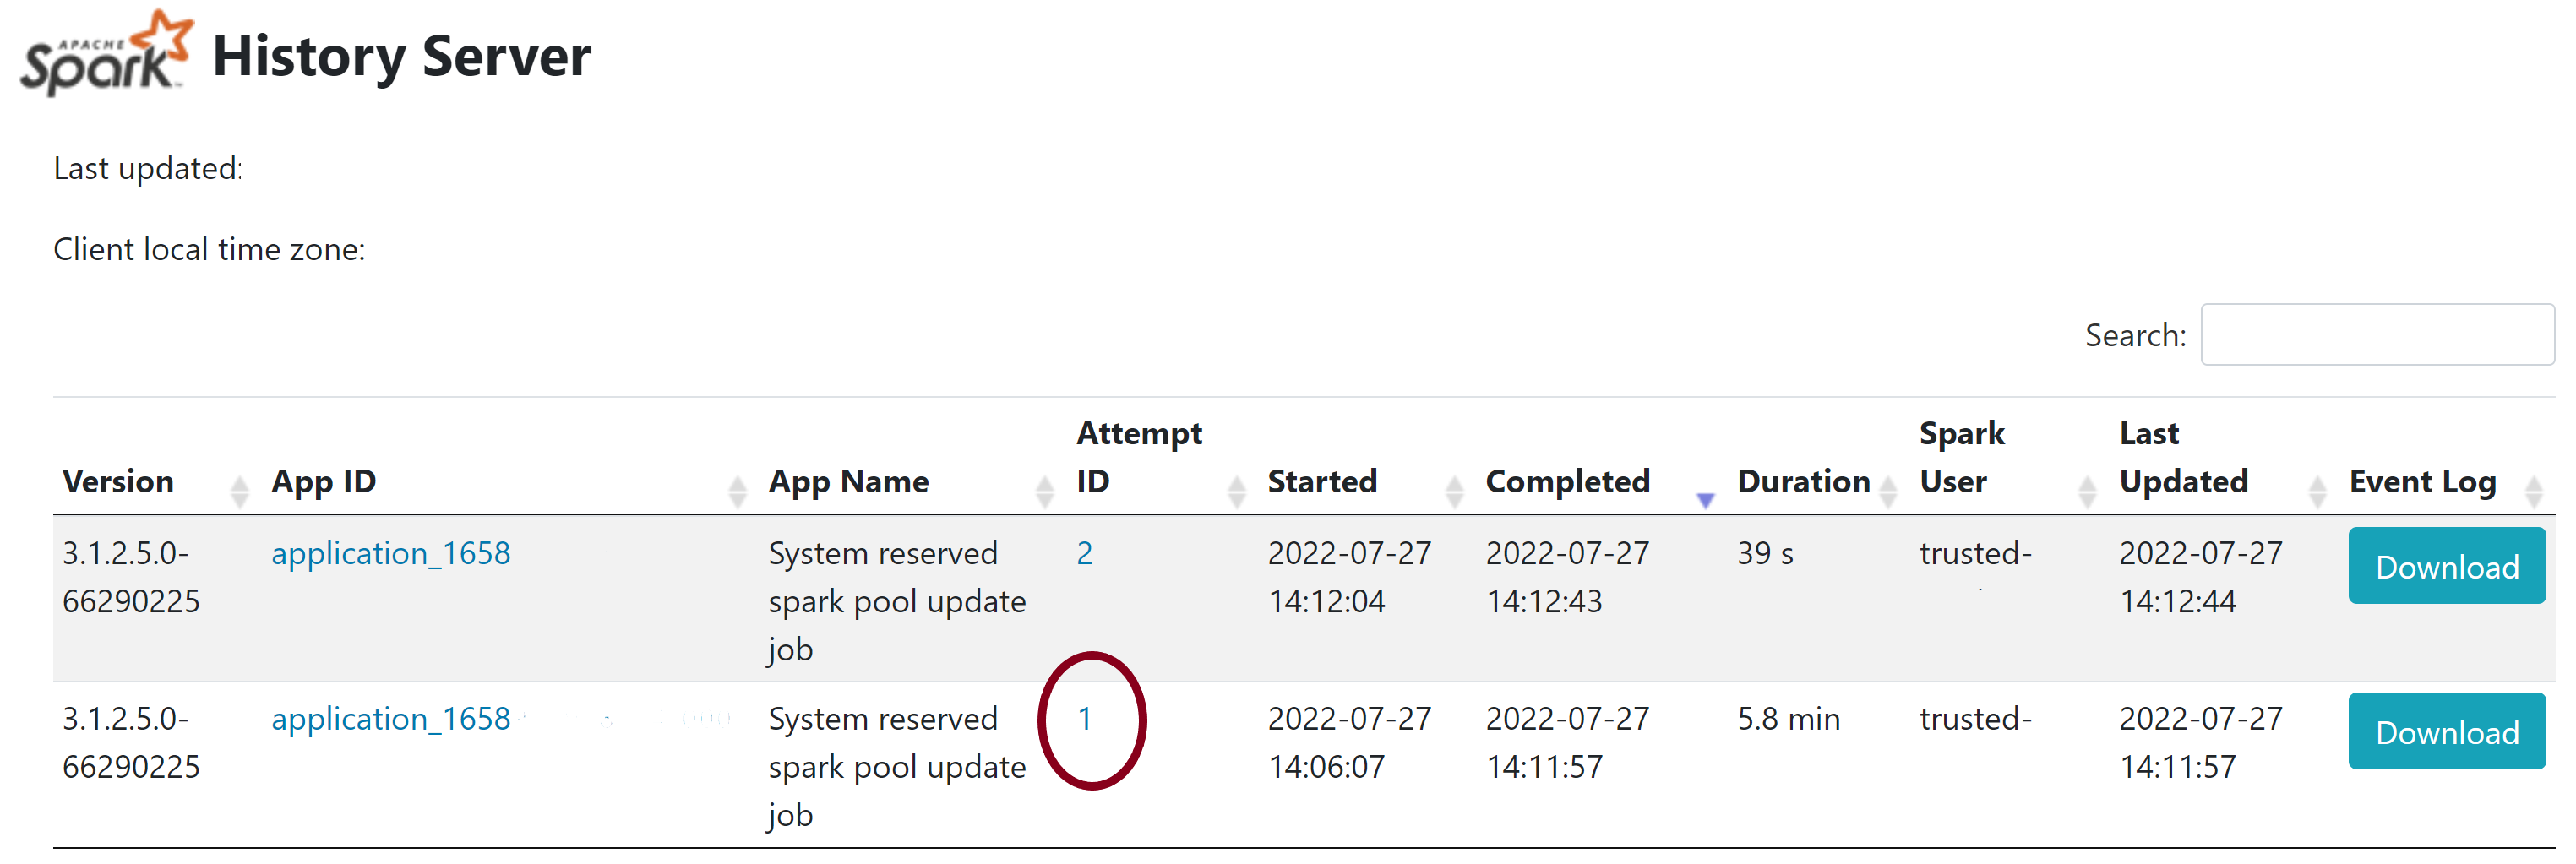 螢幕擷取畫面醒目提示 Spark 歷程記錄伺服器頁面中系統保留程式庫作業失敗的執行程式詳細資料。